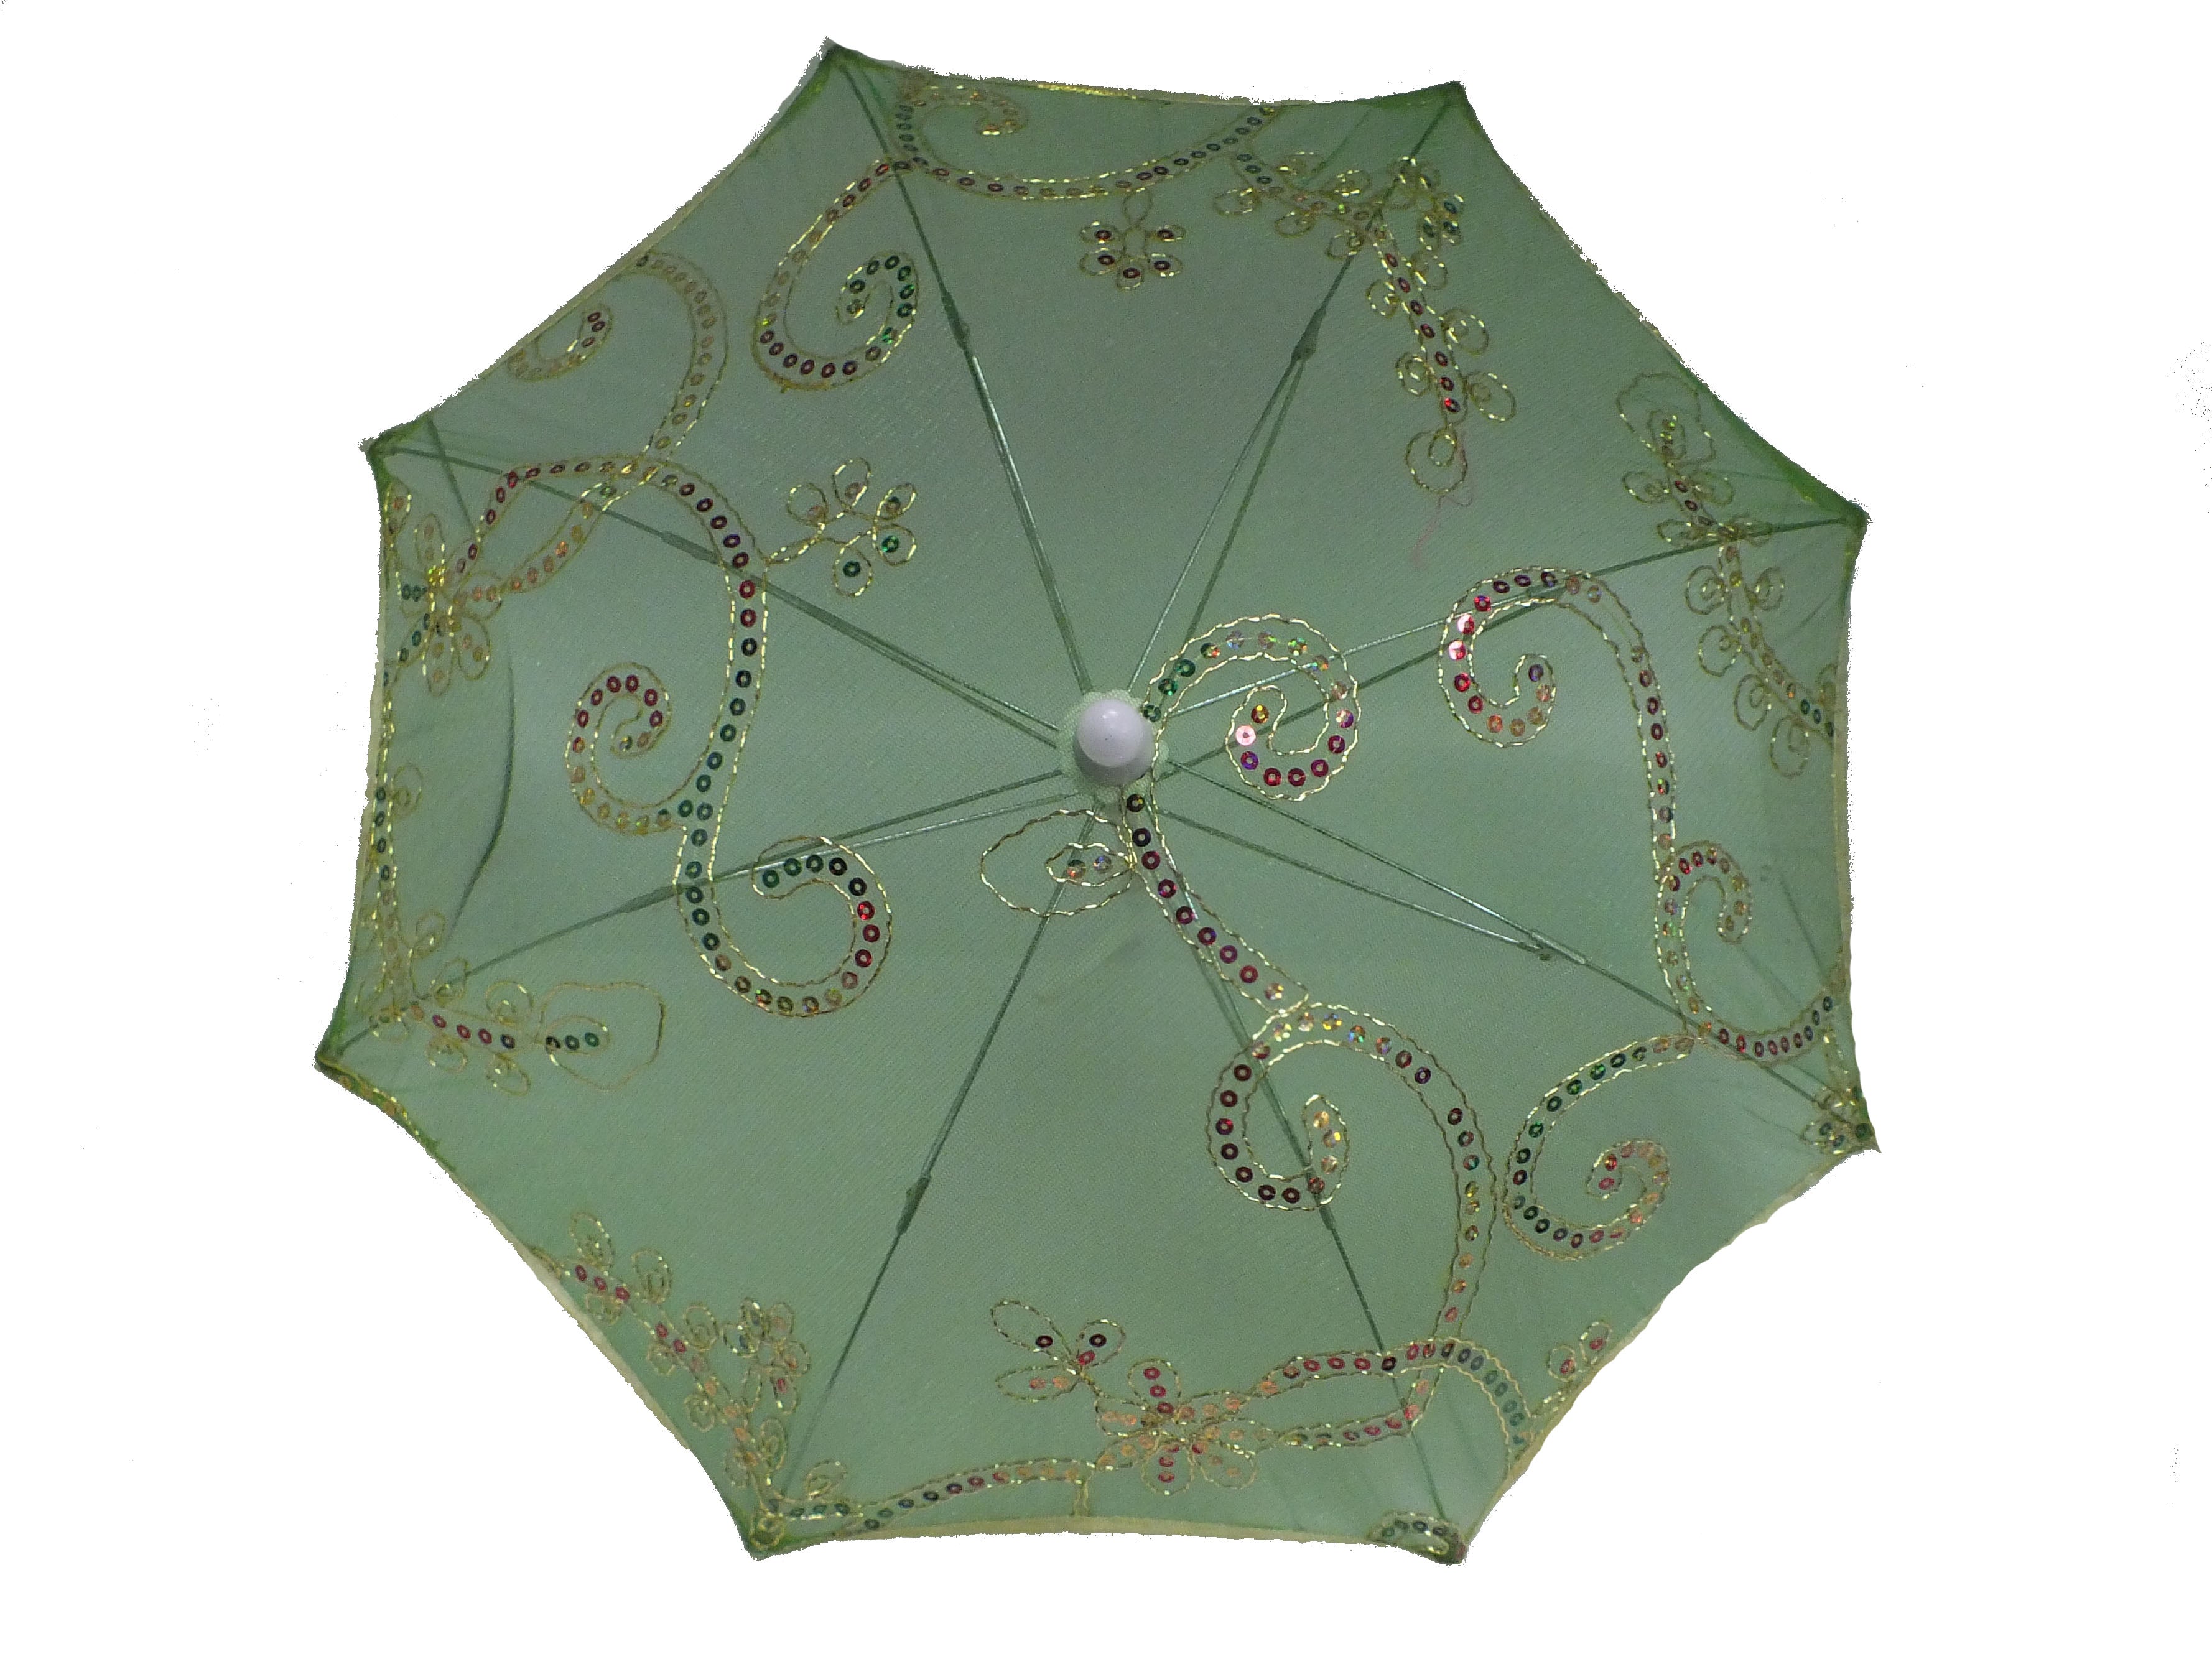 vidaXL Fishing Umbrella Green 118x94